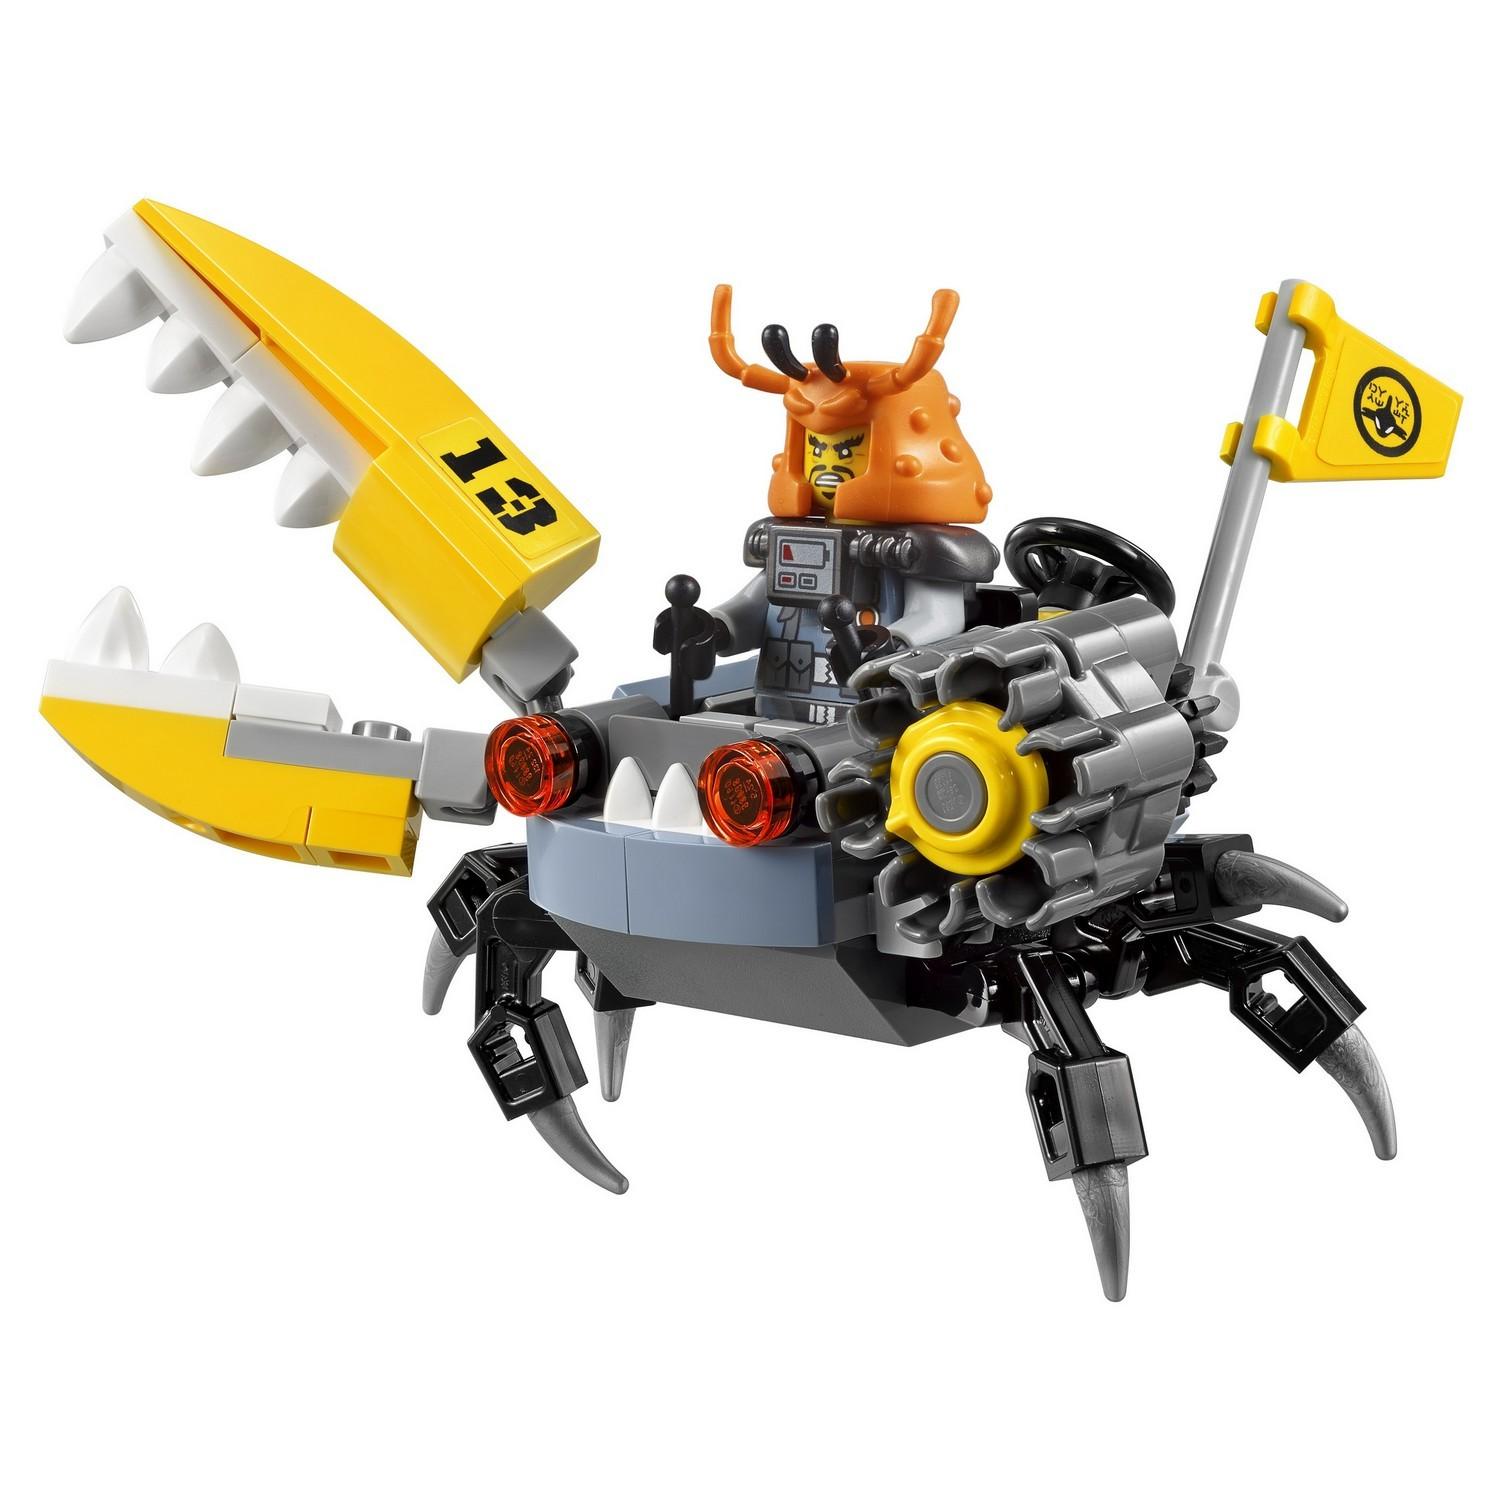 Lego Ninjago 70614 Самолет-молния Джея